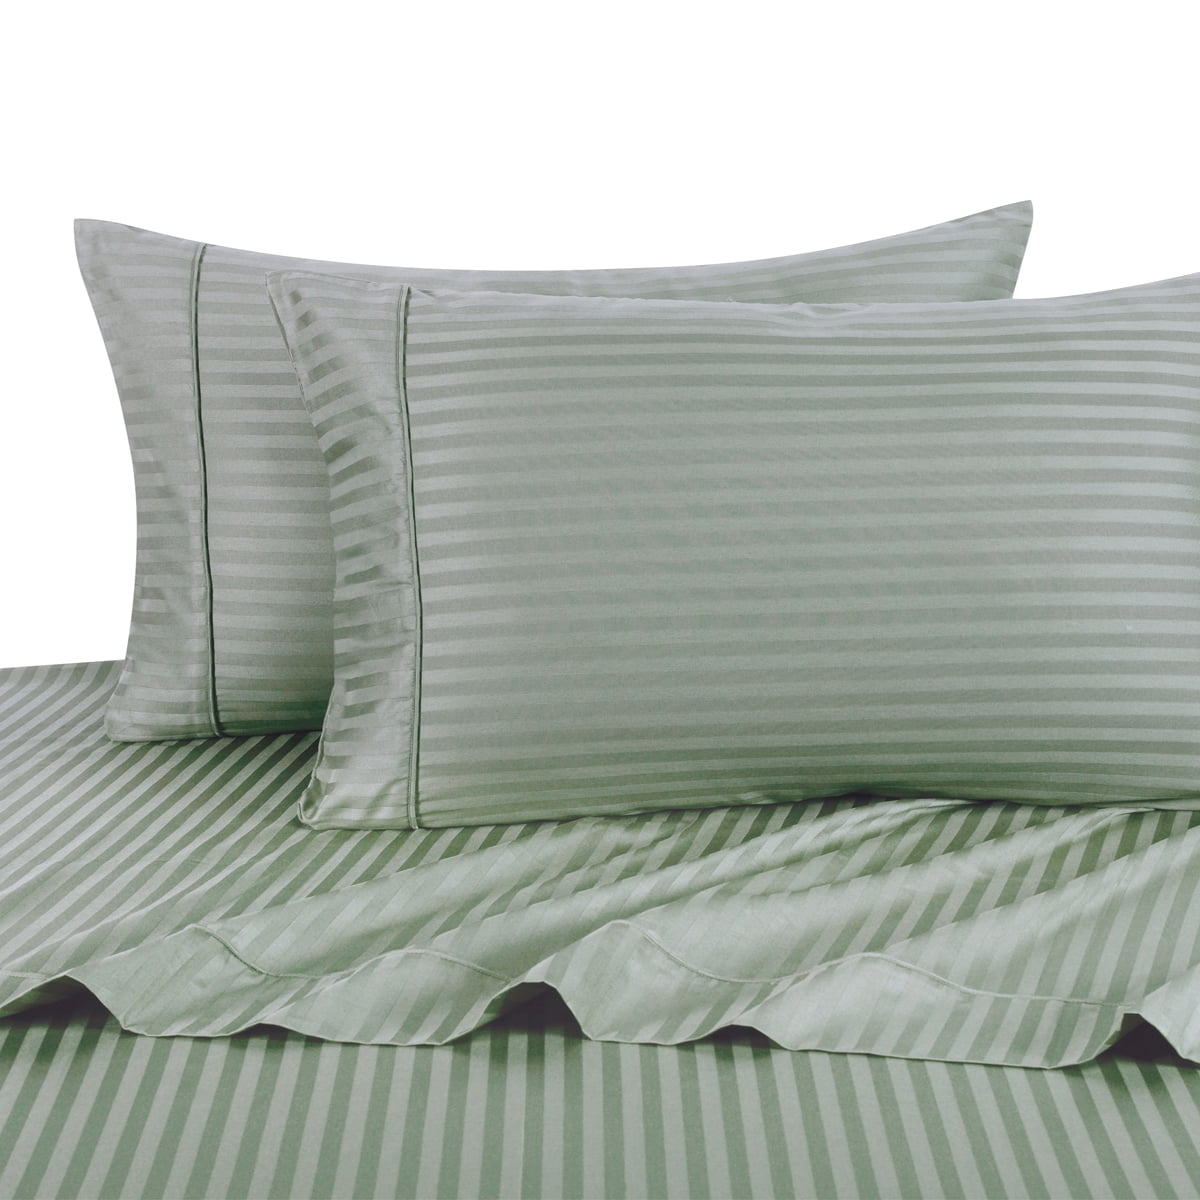 Pair Luxury 100% Egyptian Cotton 600TC Sateen Stripe Damask Pillowcases set